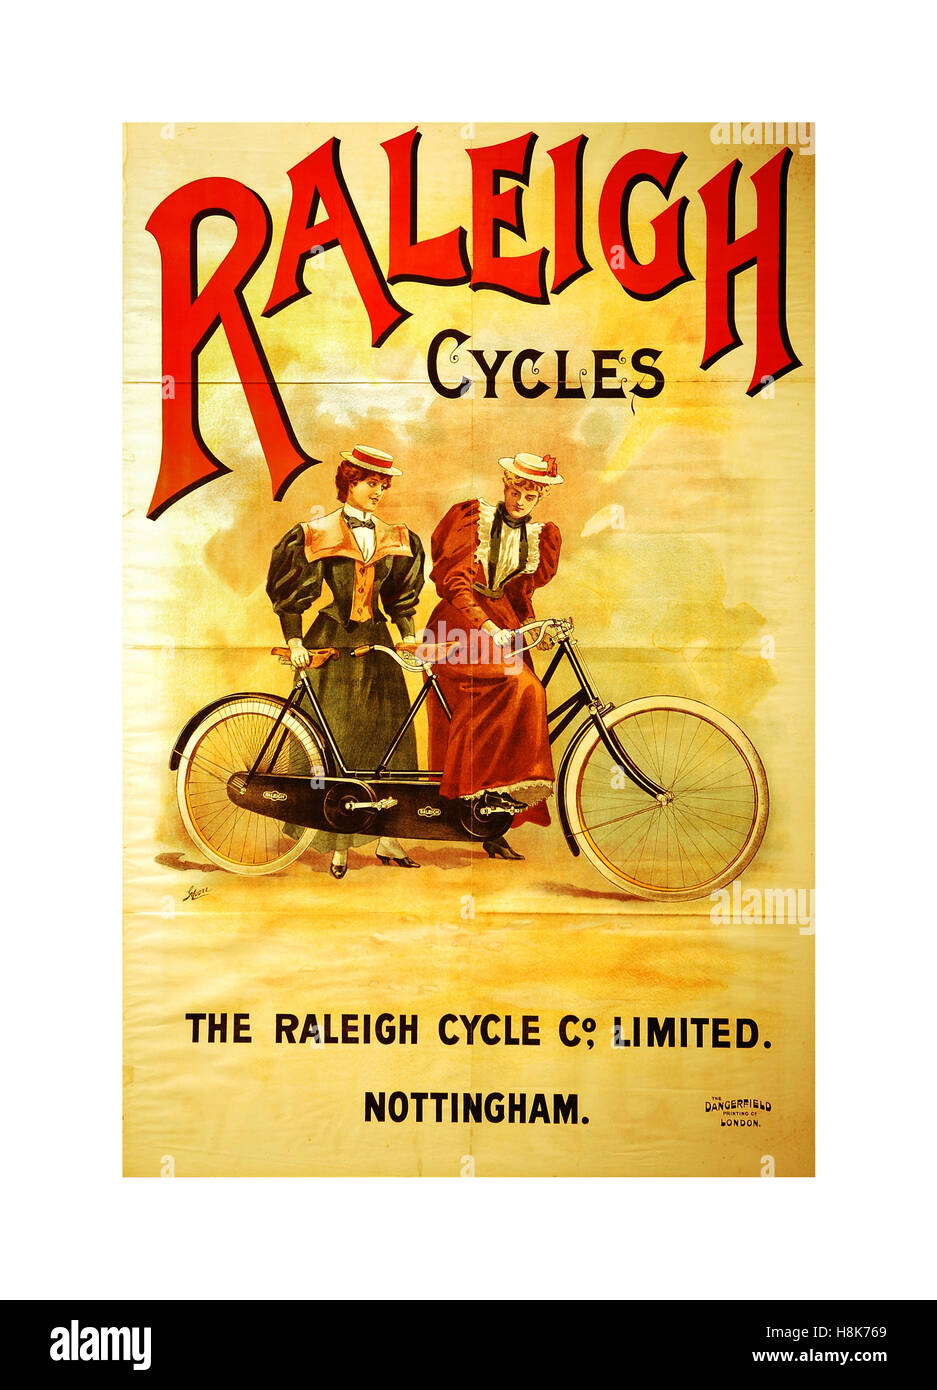 RALEIGH Jahrgang 1900 retro Werbeplakat für britische Raleigh bikes Fahrräder Zyklen Nottingham, Großbritannien Stockfoto